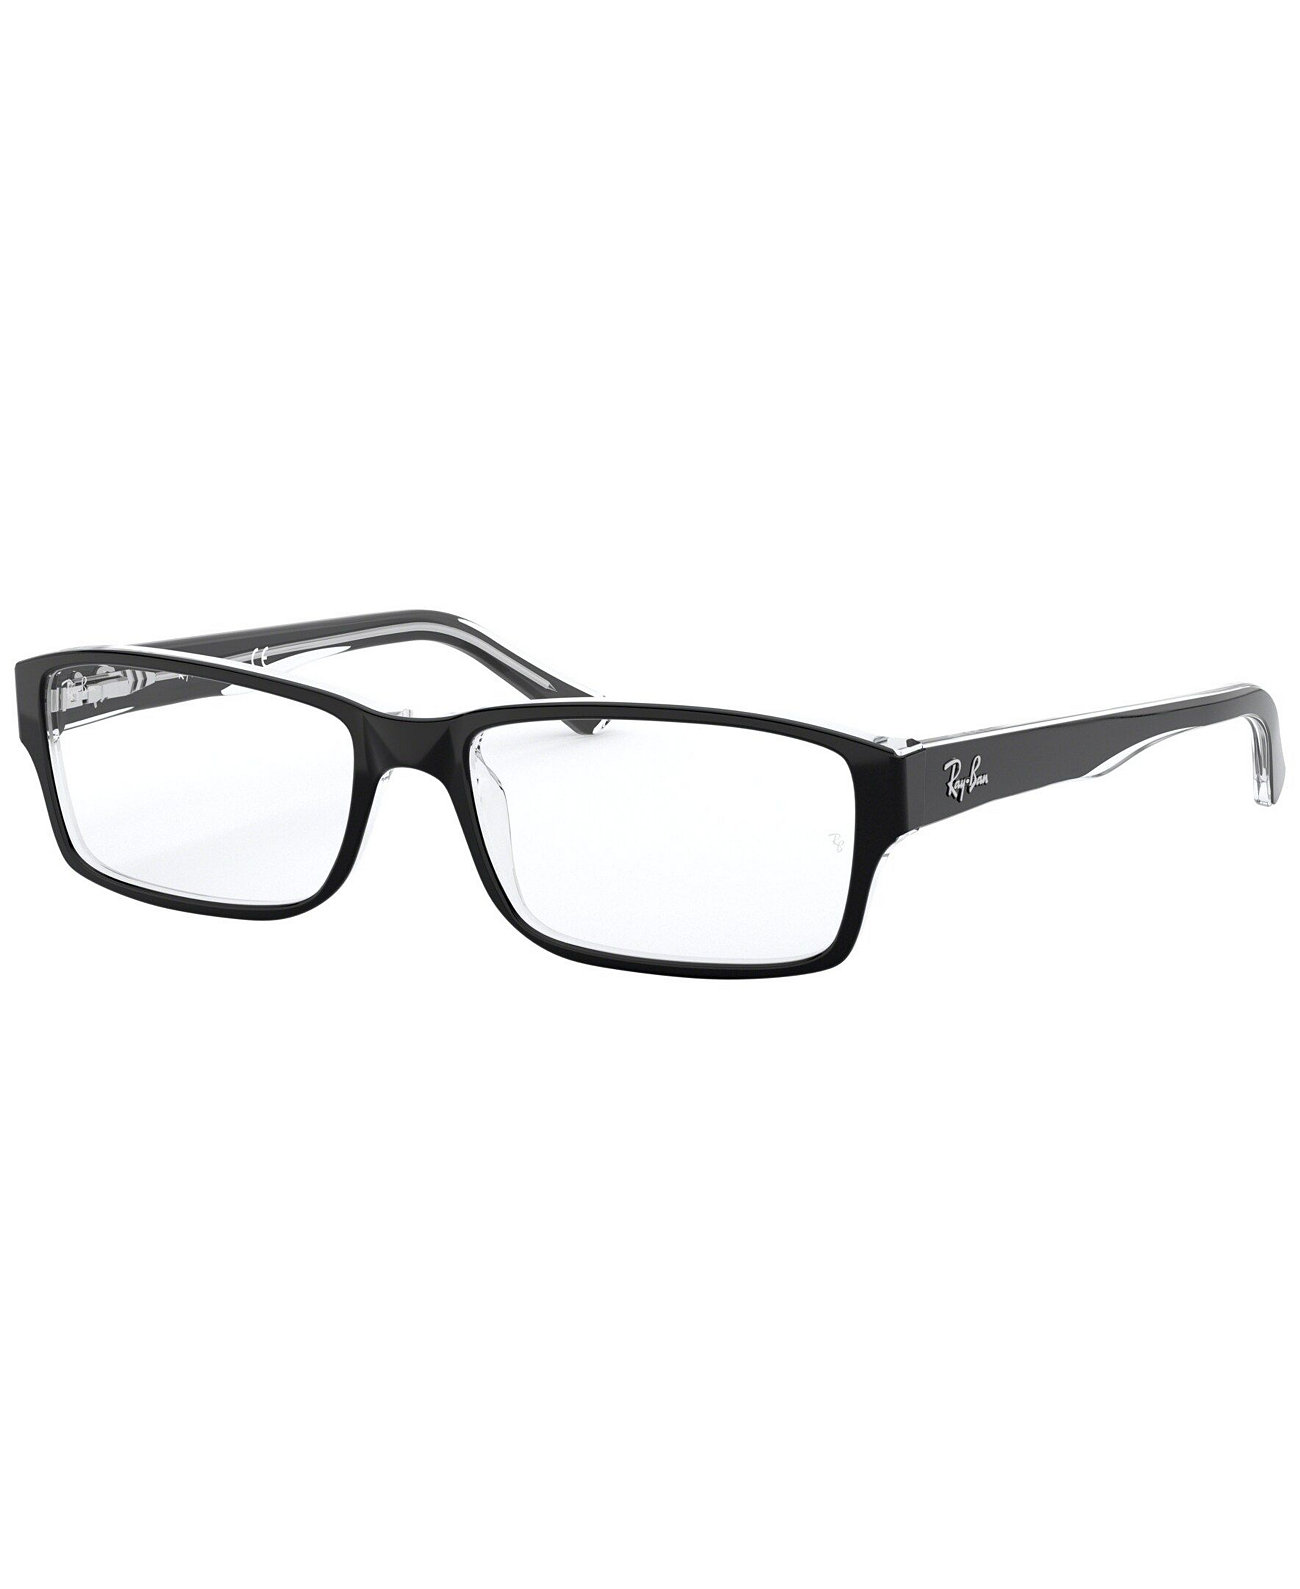 Прямоугольные очки унисекс RX5169 Ray-Ban